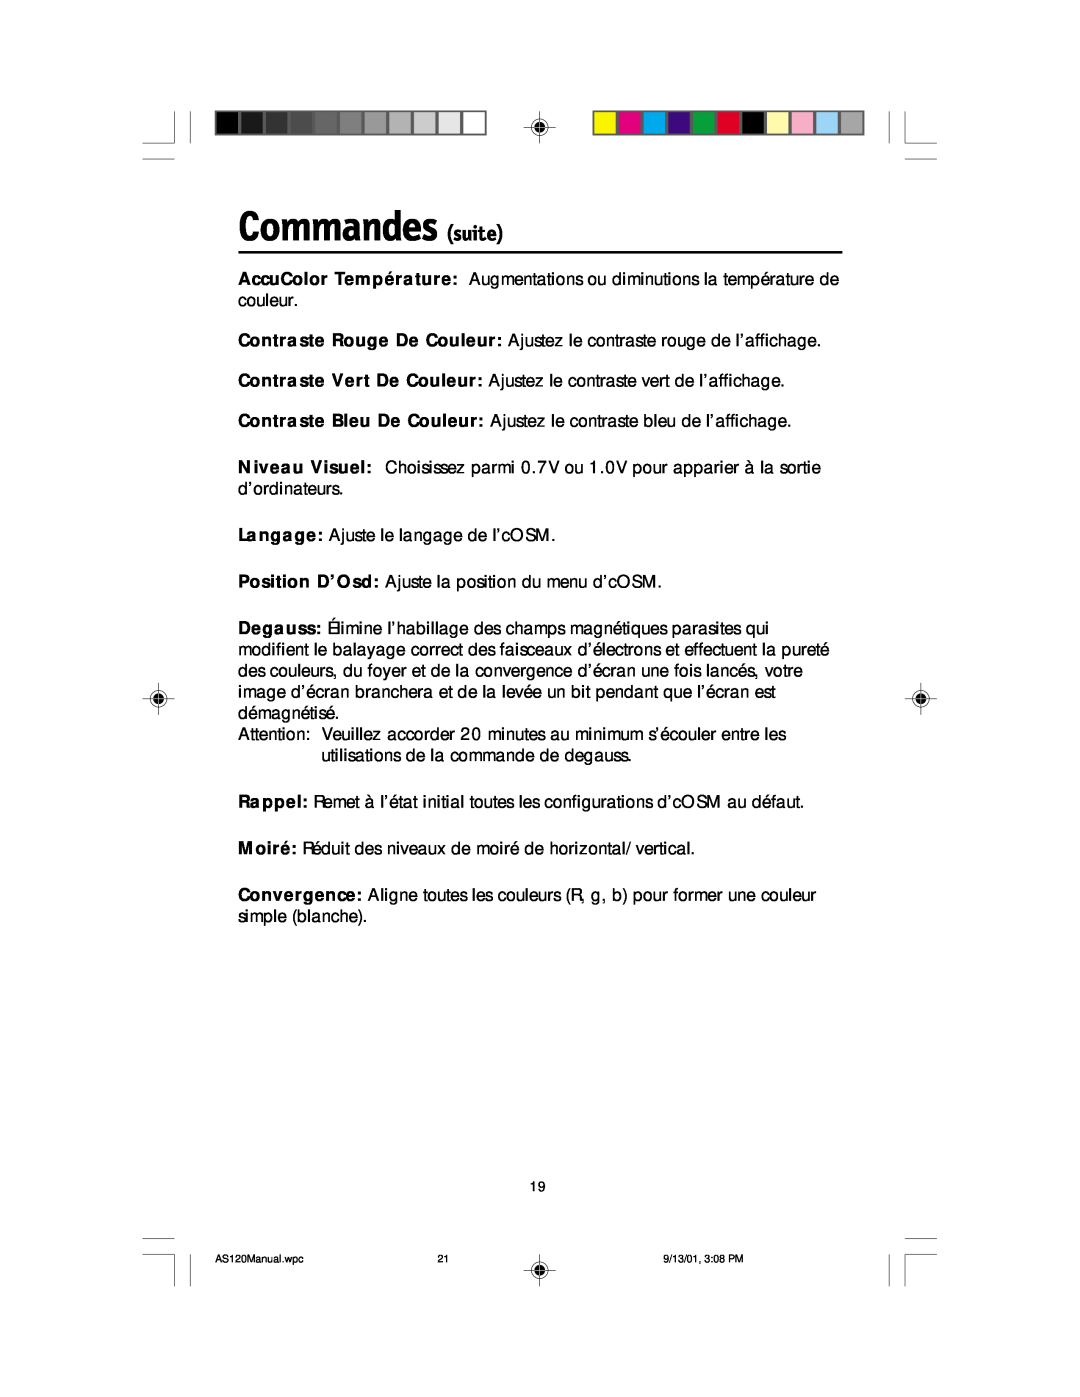 NEC AccuSync 120 user manual Commandes suite 